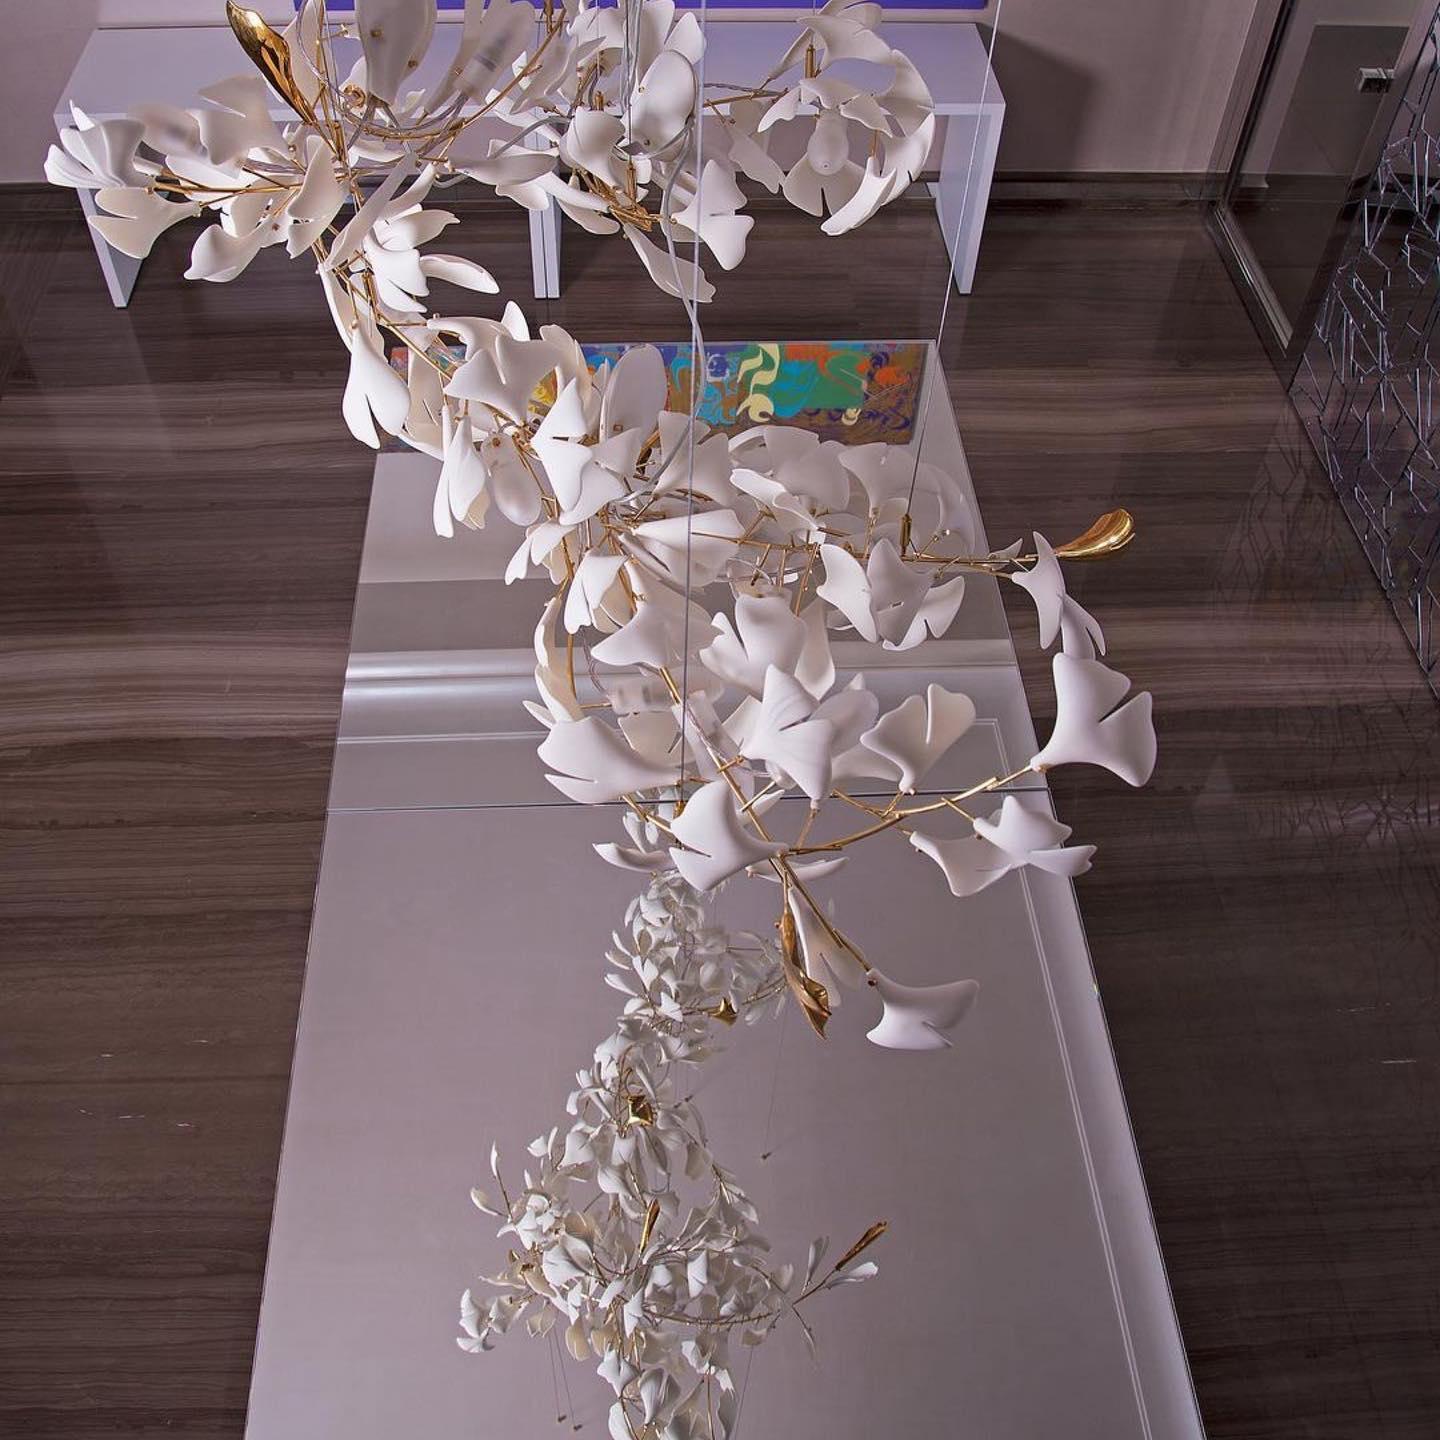 Olivia GloGink Modern Langes Gold LED Kronleuchter, aus Metall&Keramik